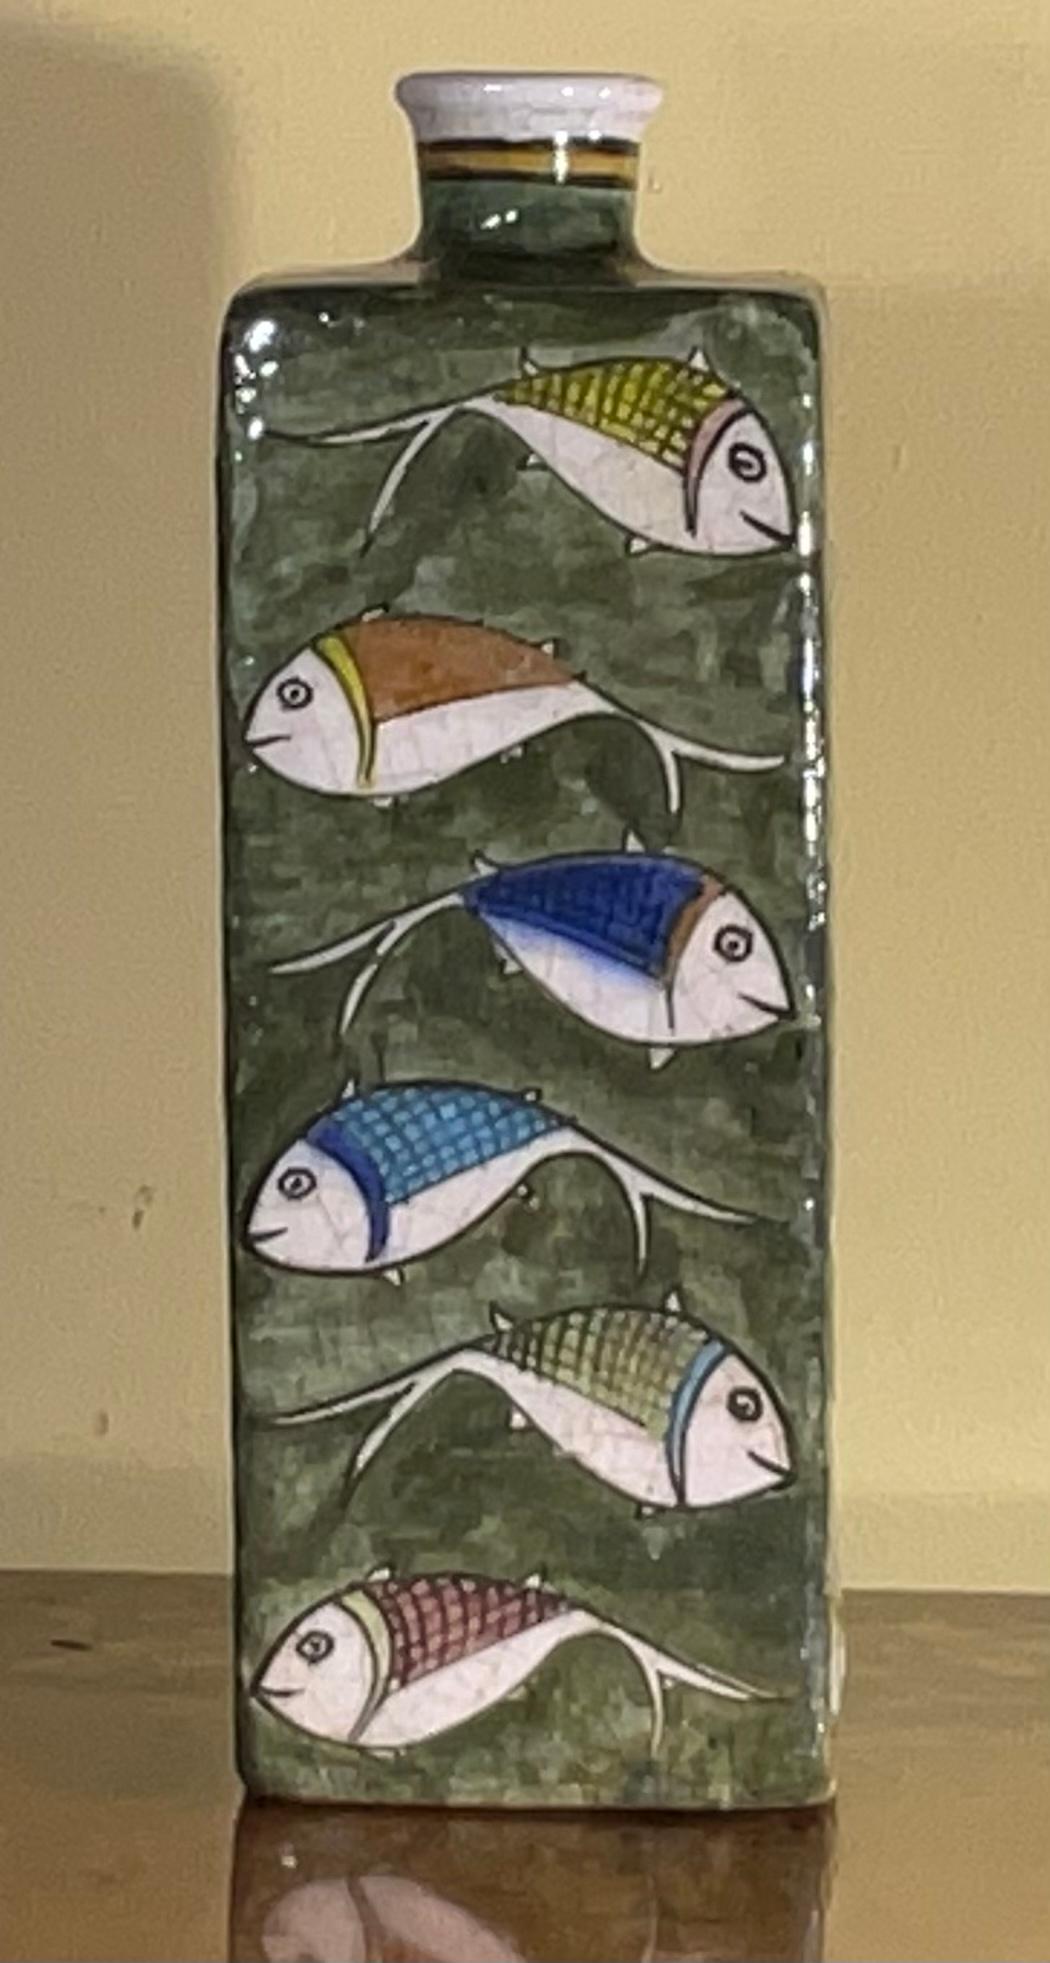 Magnifique vase en céramique perse peint à la main et émaillé de motifs de poissons colorés sur fond vert. Grand objet d'art à exposer.
L'ouverture est de 1 pouce.